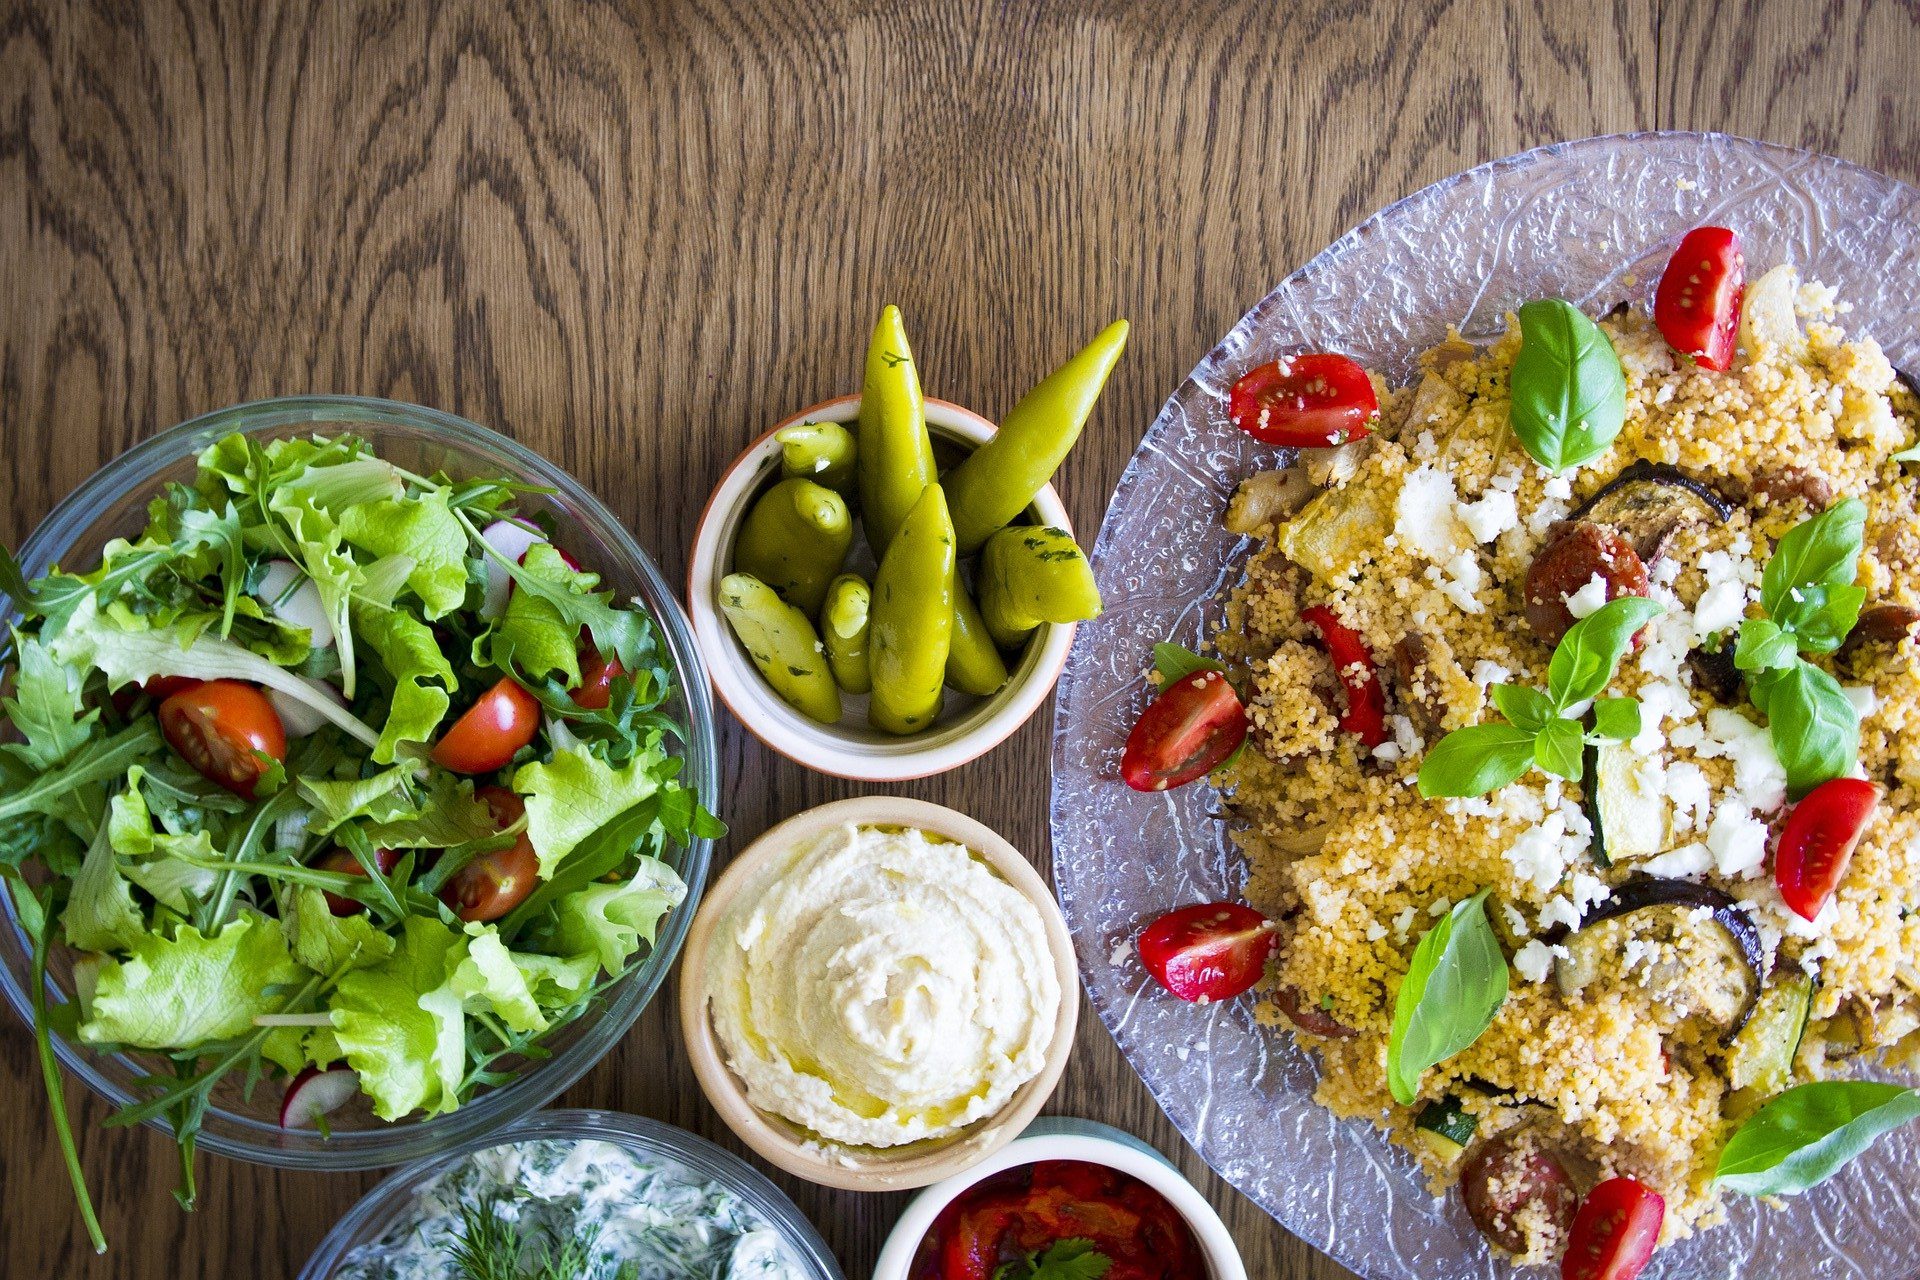 Cuscuz: na imagem, à direita, um prato de cuscuz marroquino. À esquerda, há vários potinhos com saladas e molhos.